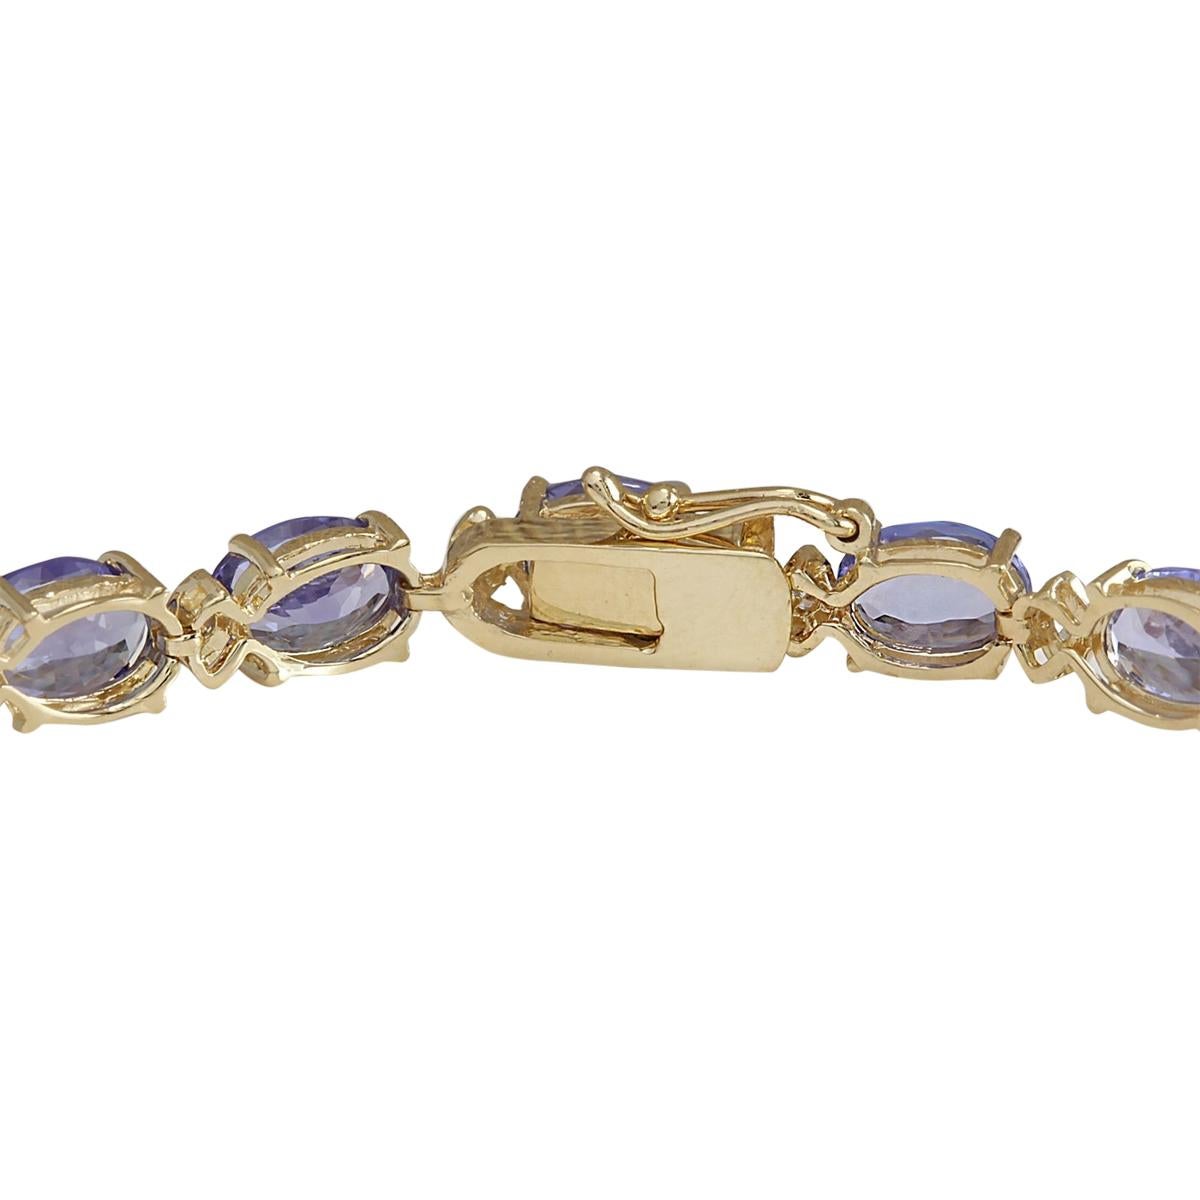 Offrez-vous une élégance opulente avec notre bracelet en or jaune 14 carats et diamants de 18,03 carats de Tanzanite Naturelle. Fabriquée en or jaune 14 carats et estampillée pour l'authenticité, cette pièce exquise pèse 12,0 grammes, garantissant à